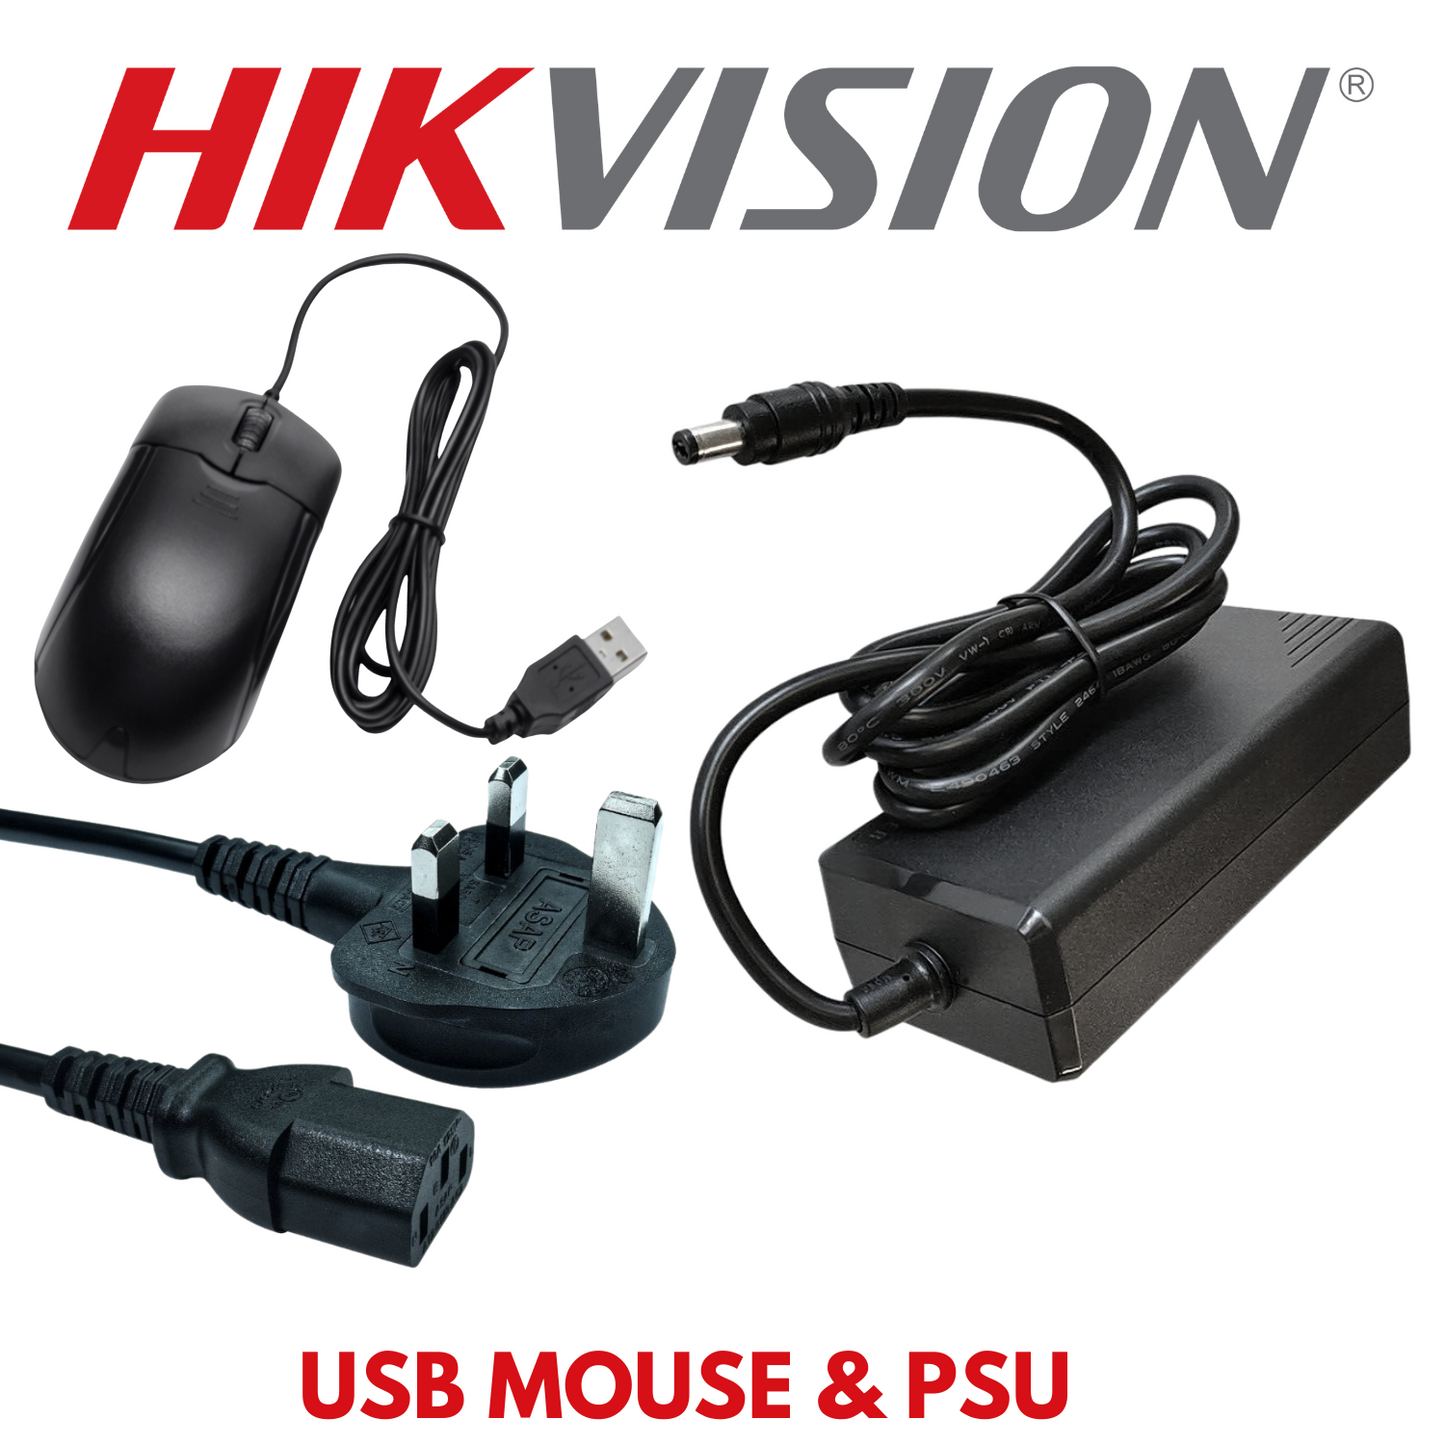 Hikvision 8MP 4K ColorVu Cctv Kit 24 Hour Full Colour 4x Camera Cctv Kit